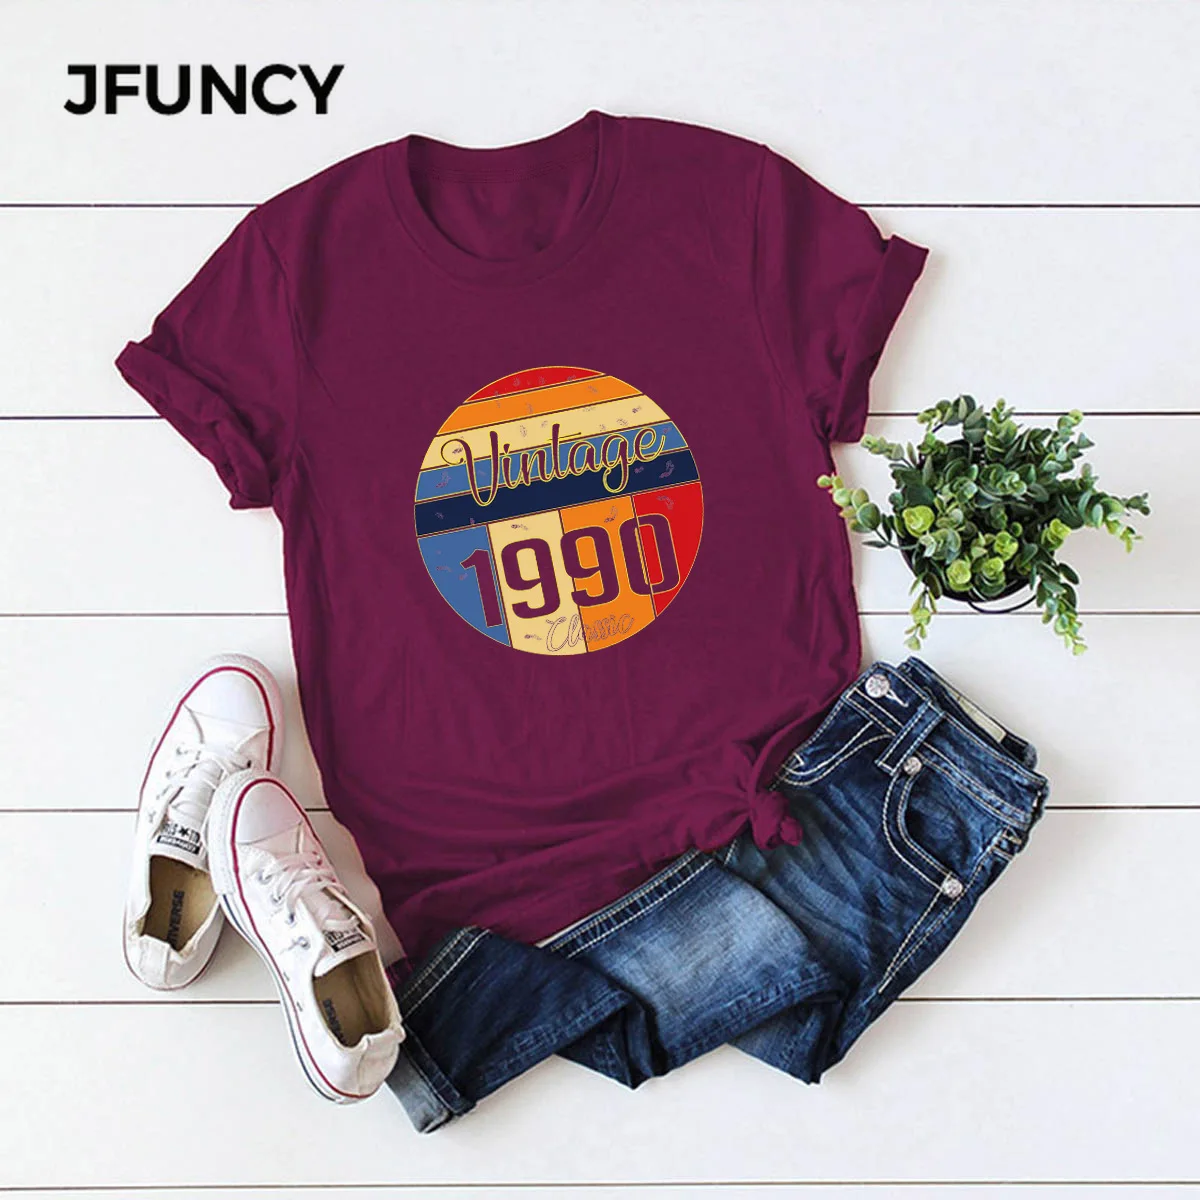 JFUNCY Vintage 1990 Print  Women T-Shirt O Neck Short Sleeve Women T Shirt 100% Cotton Summer Tees Tops